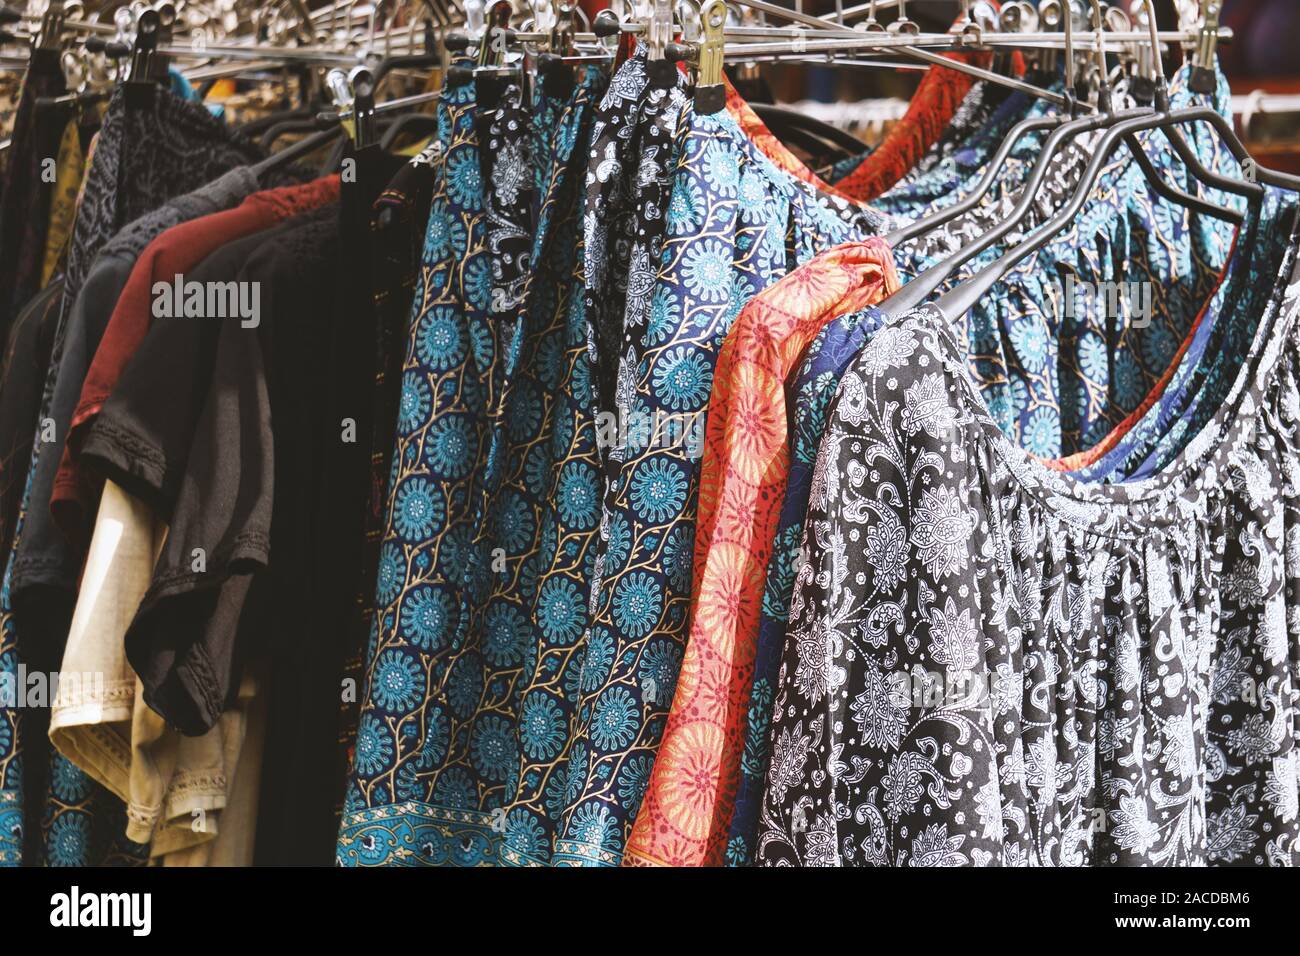 Porte manteau style hippie boho avec des vêtements de femmes avec motif floral et paisley au marché de la mode en plein air Banque D'Images